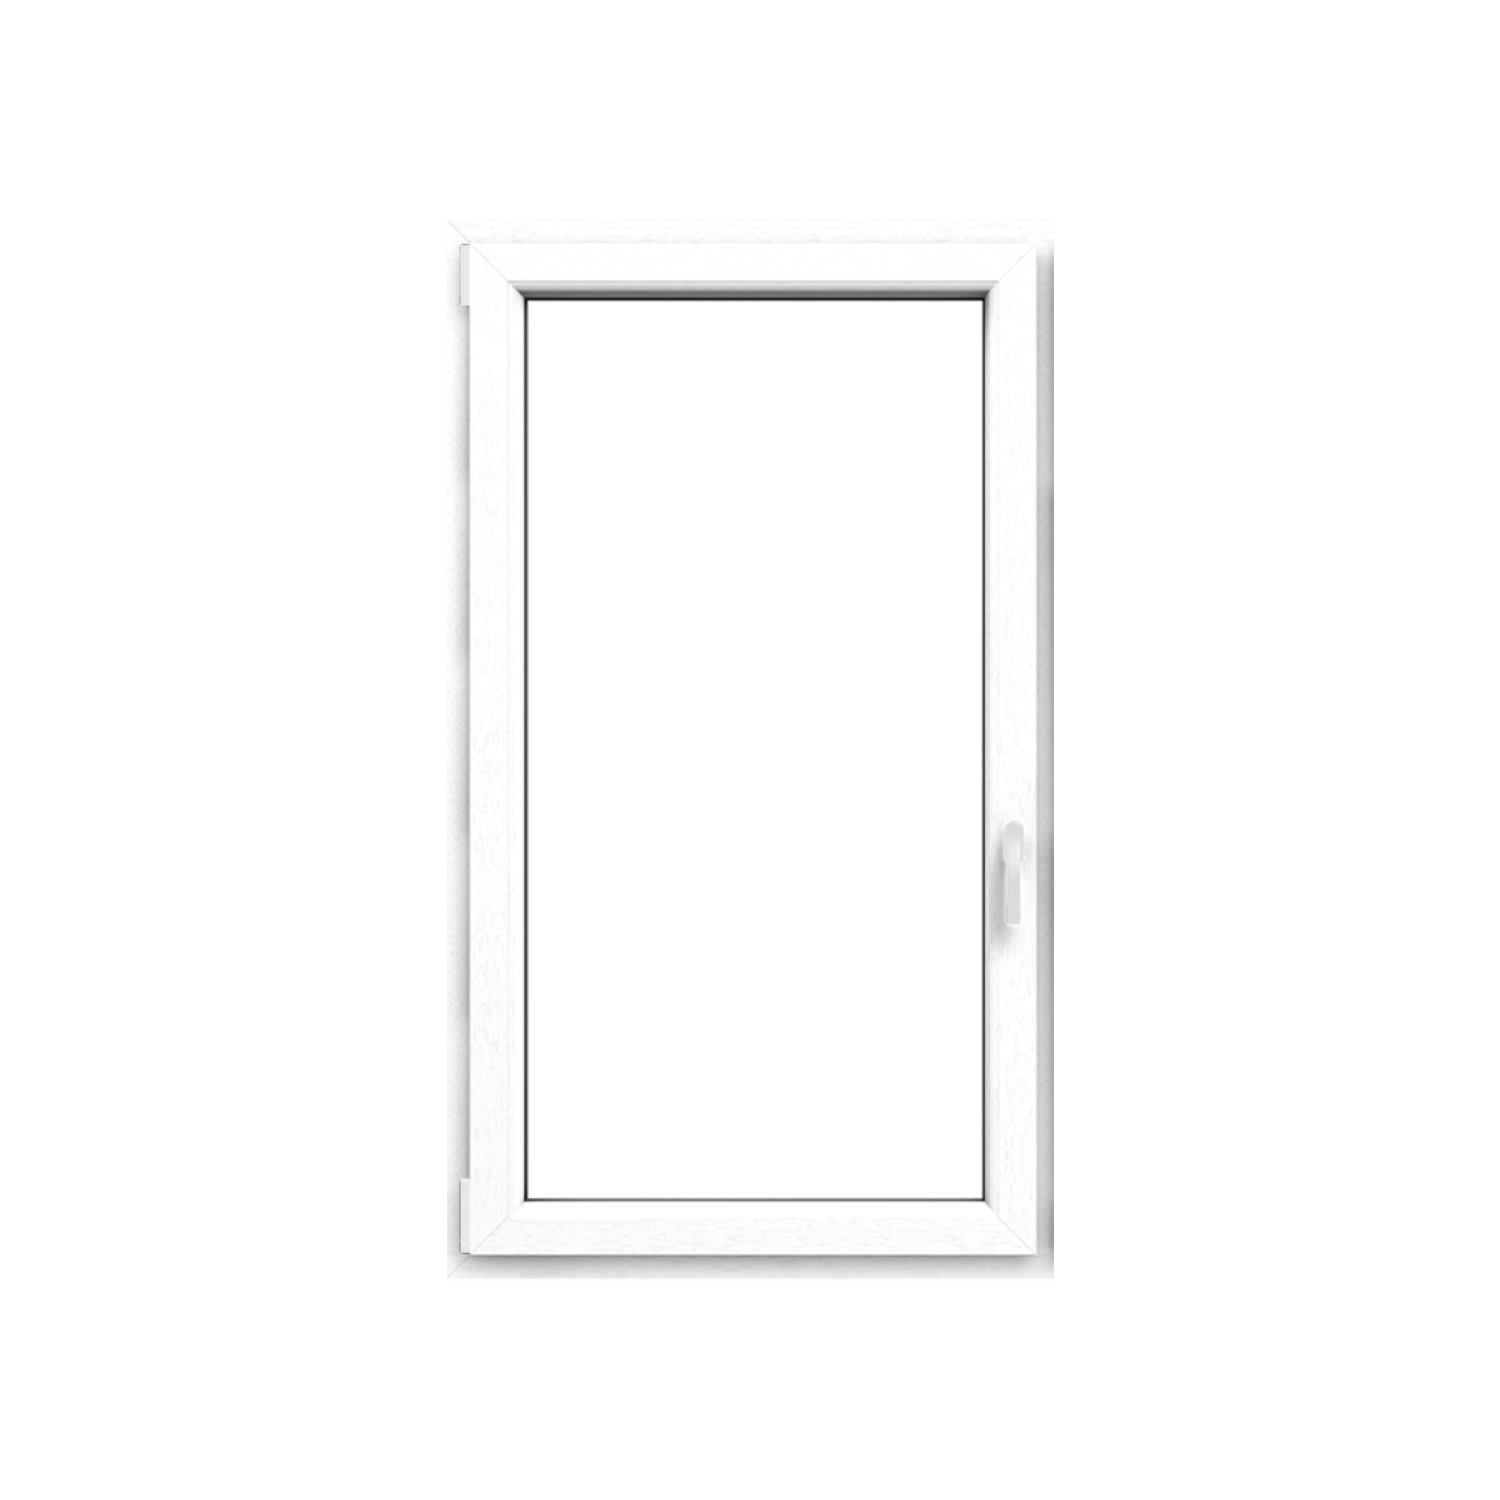 Okno plastové EKOSUN 6 bílé, OS1A 90x120 P,trojsklo, 6kom/81mm (vč. kliky)